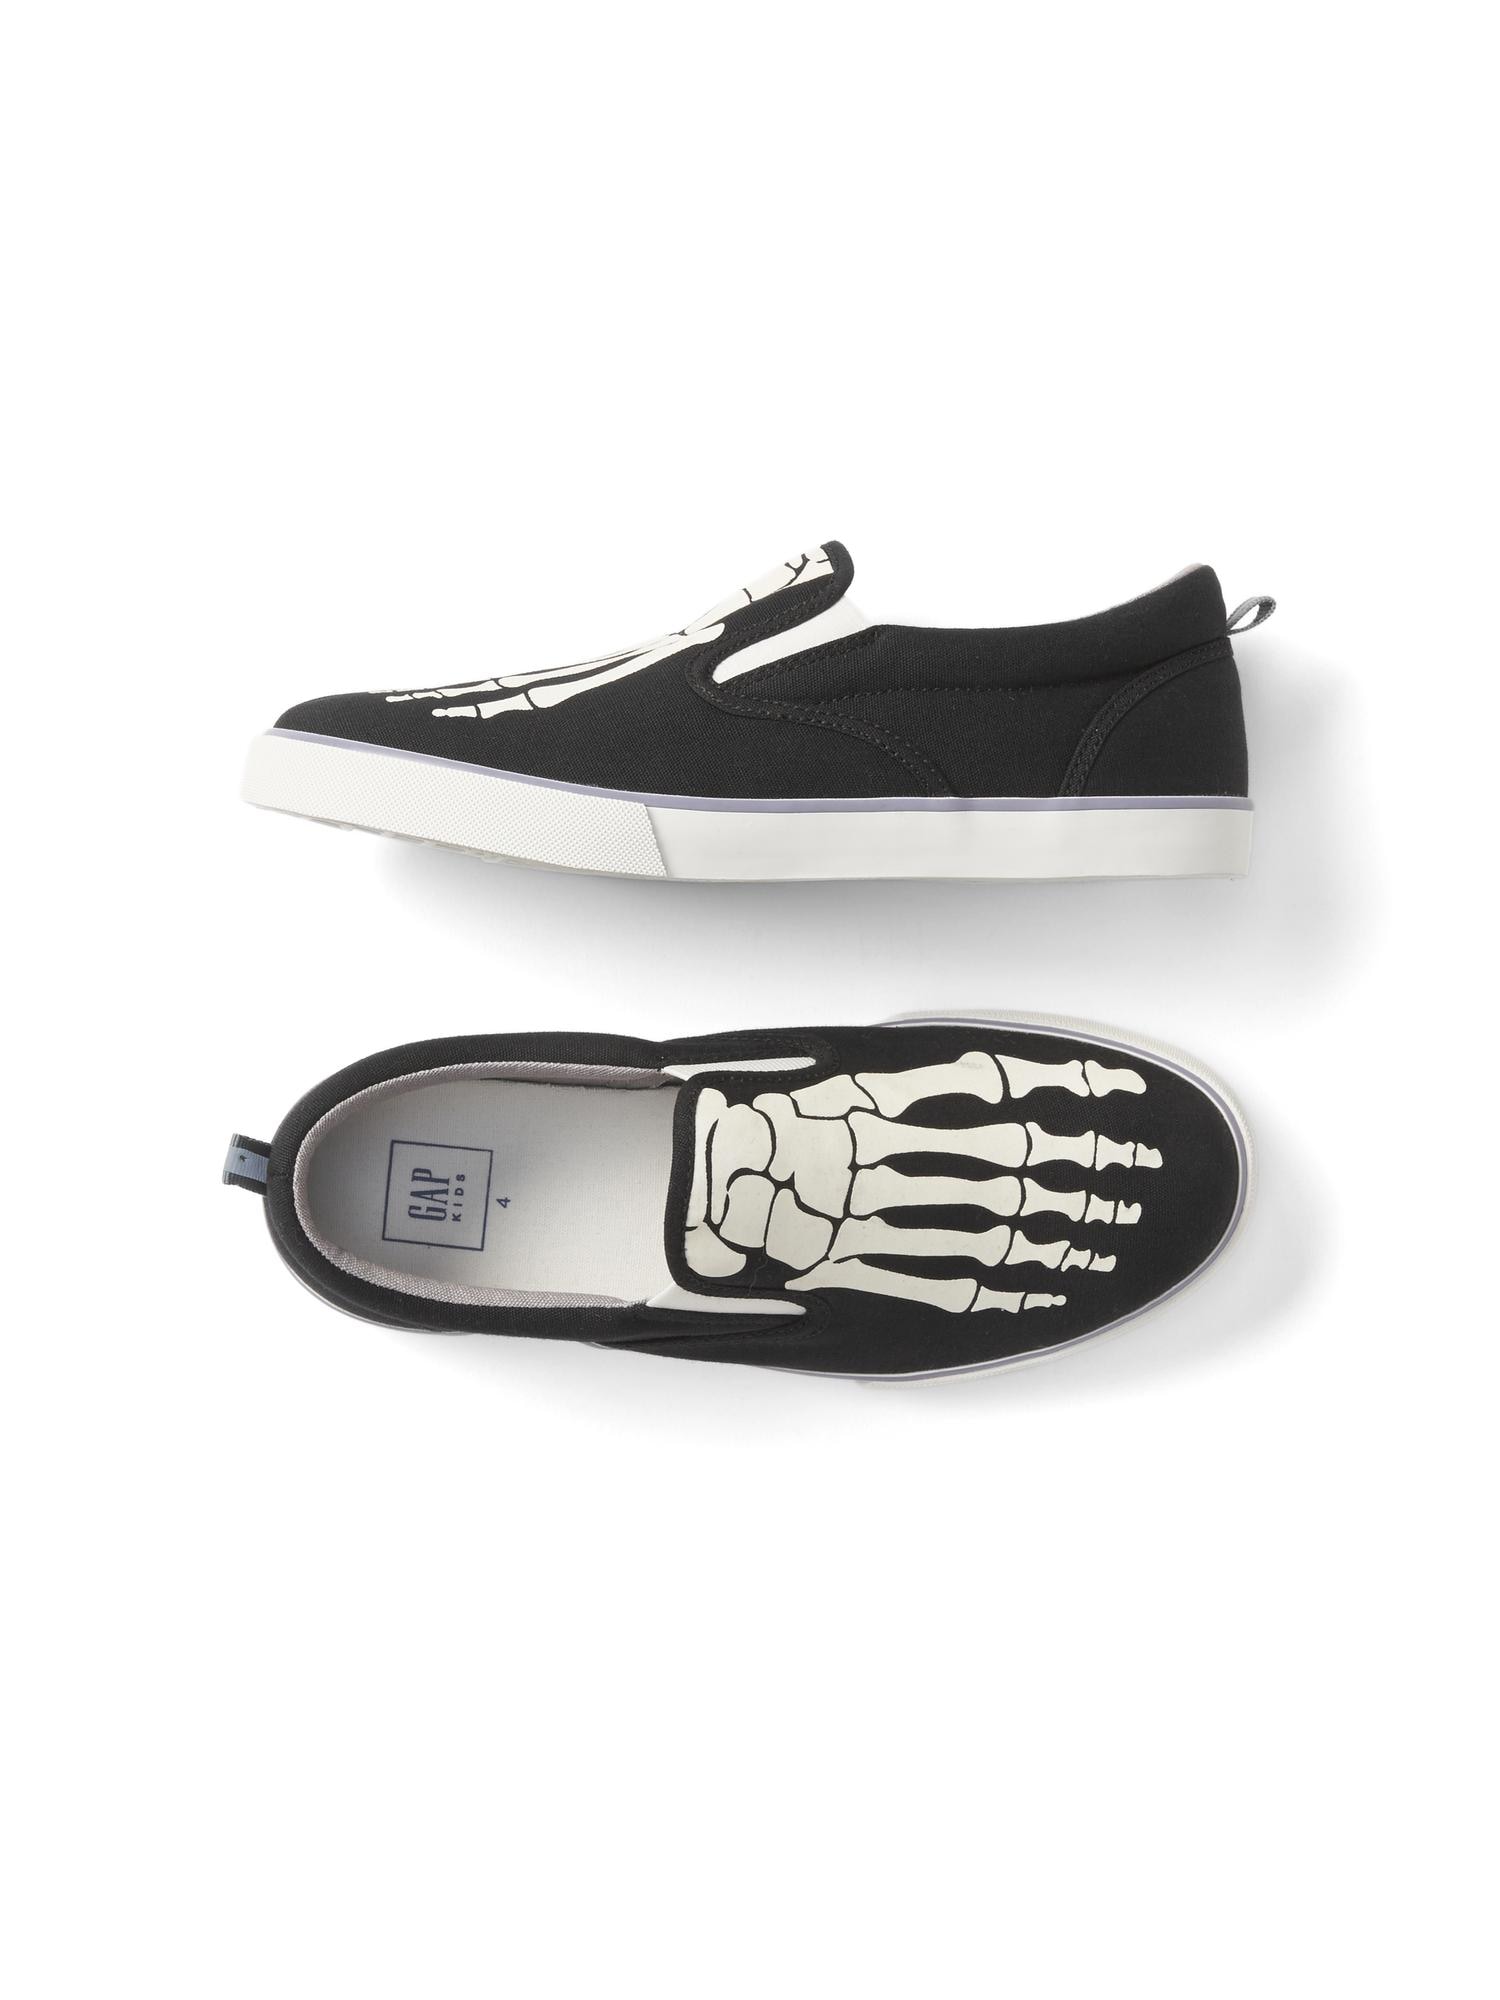 Glow-in-the-dark Halloween skeleton slip-on sneakers | Gap